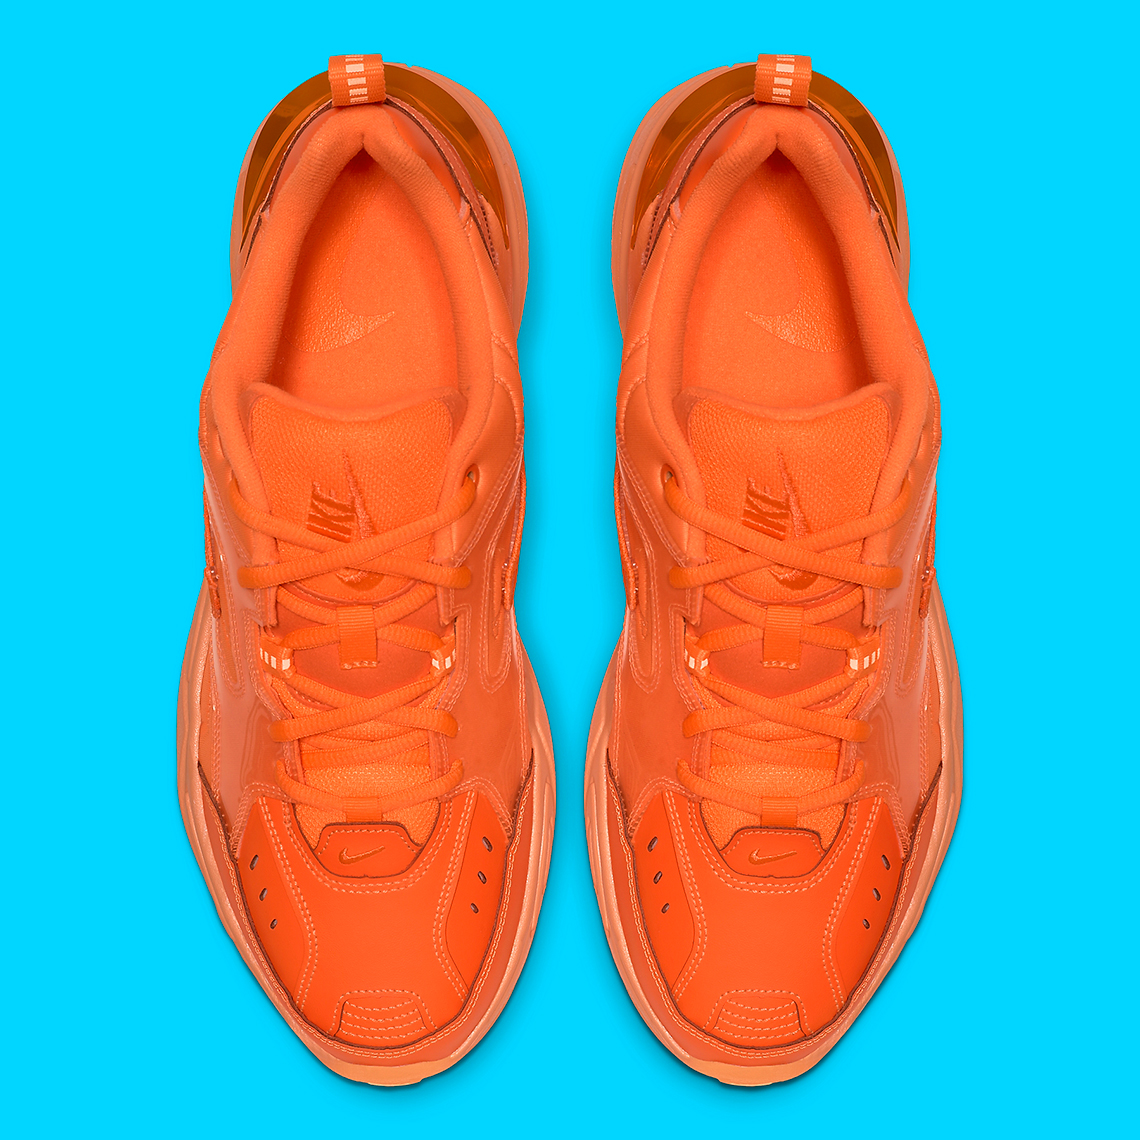 Nike M2k Tekno Gel Orange Ci5749 888 3